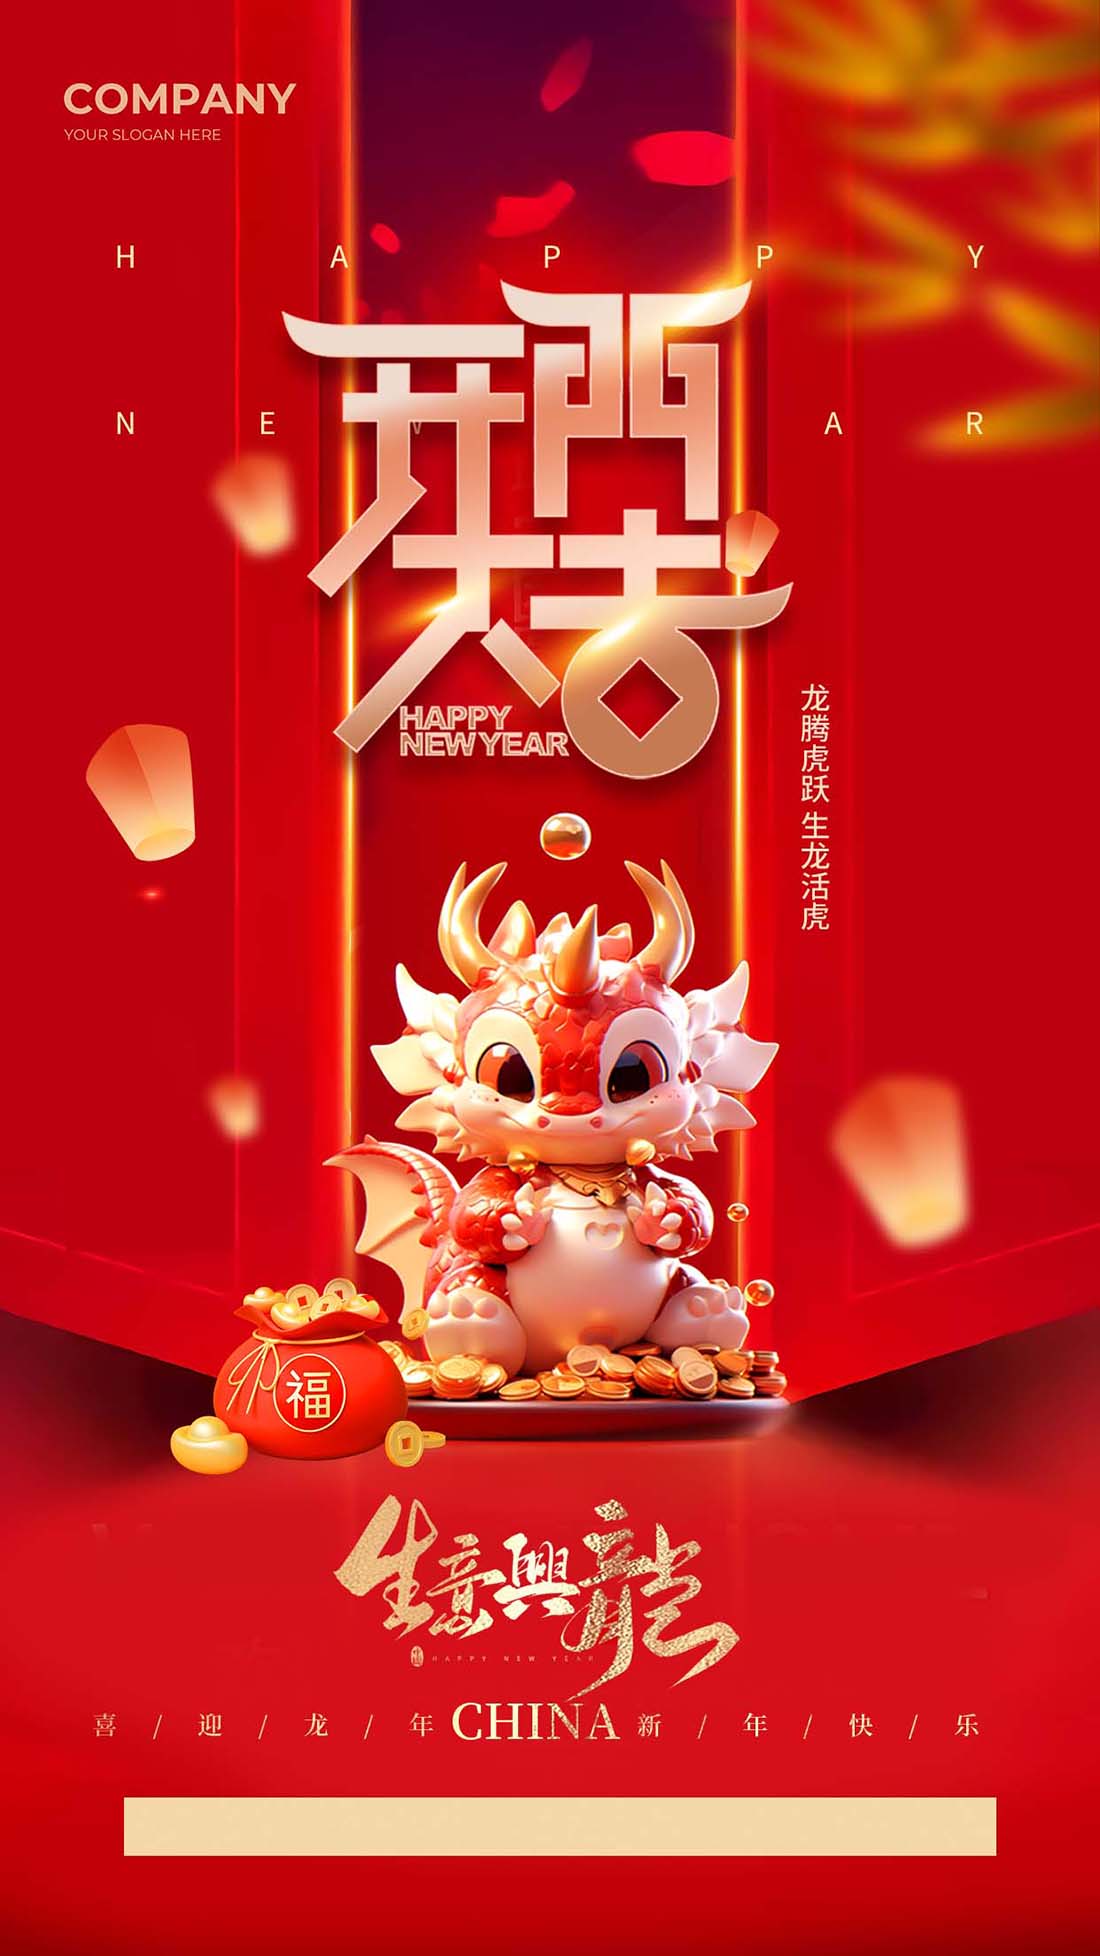 春节新年开门大吉生意兴隆海报设计